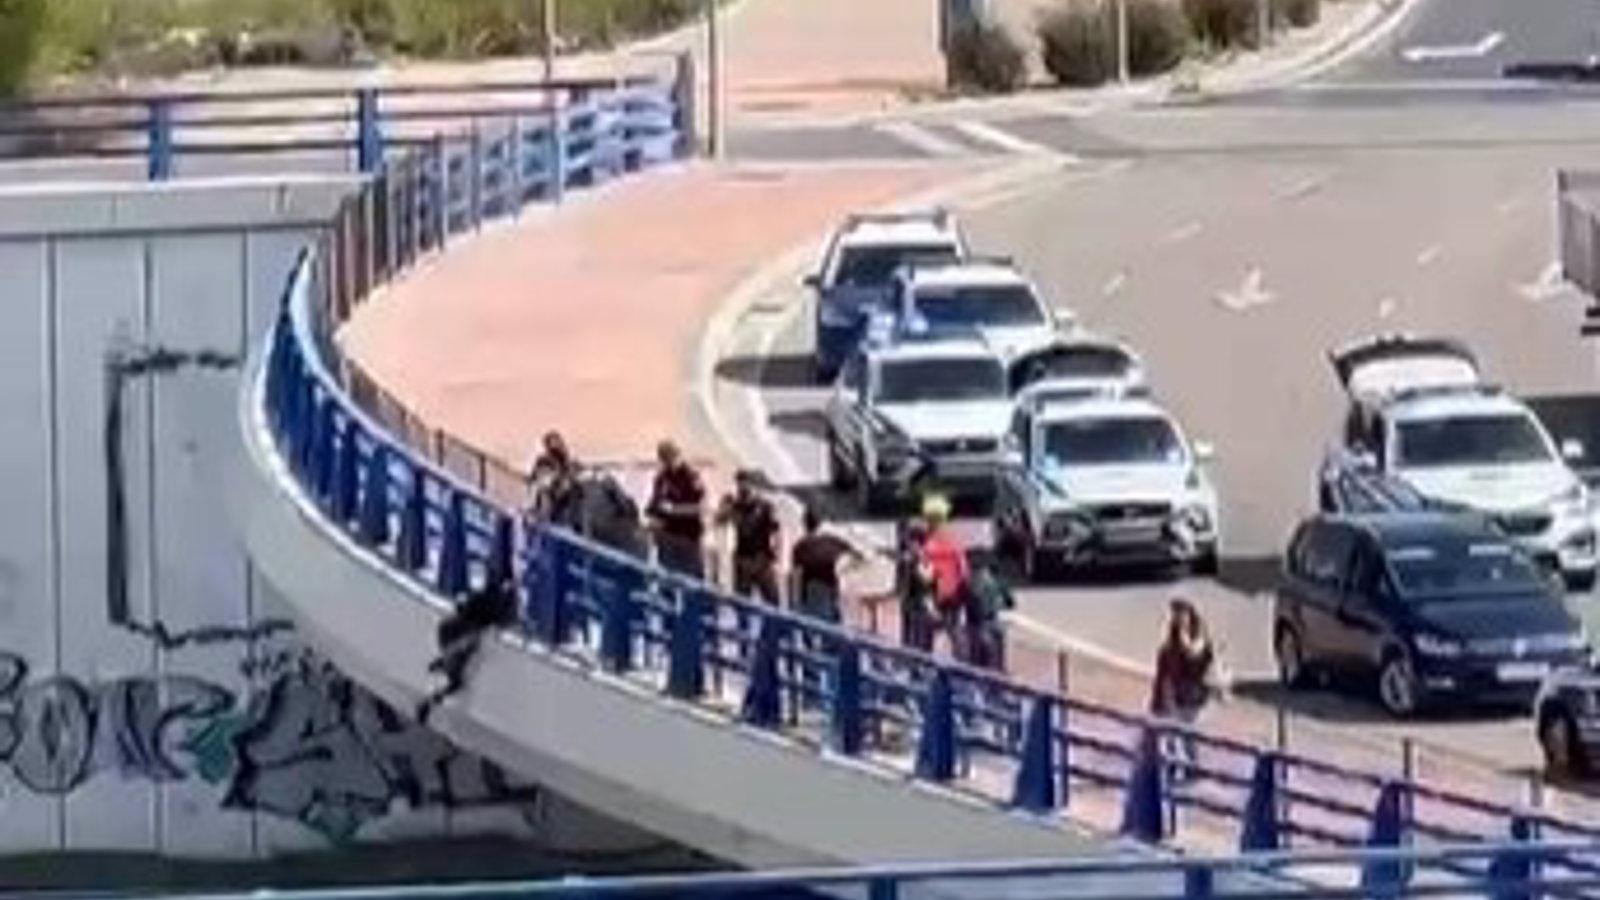  Despliegue policial para rescatar a un hombre que se había colgado de un puente en Vallecas